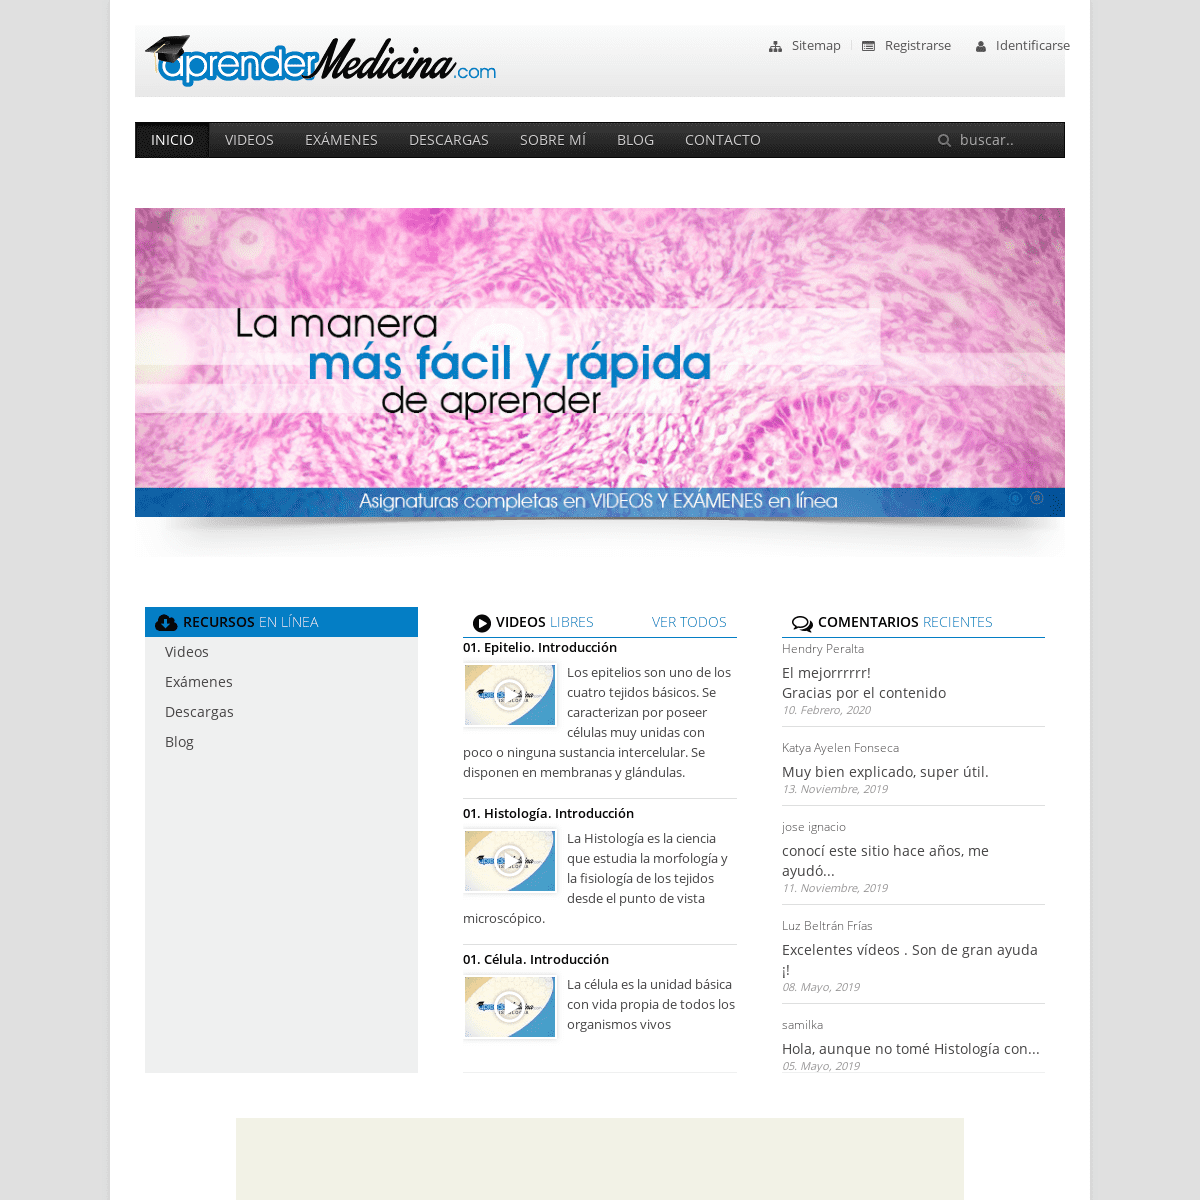 A complete backup of aprendermedicina.com